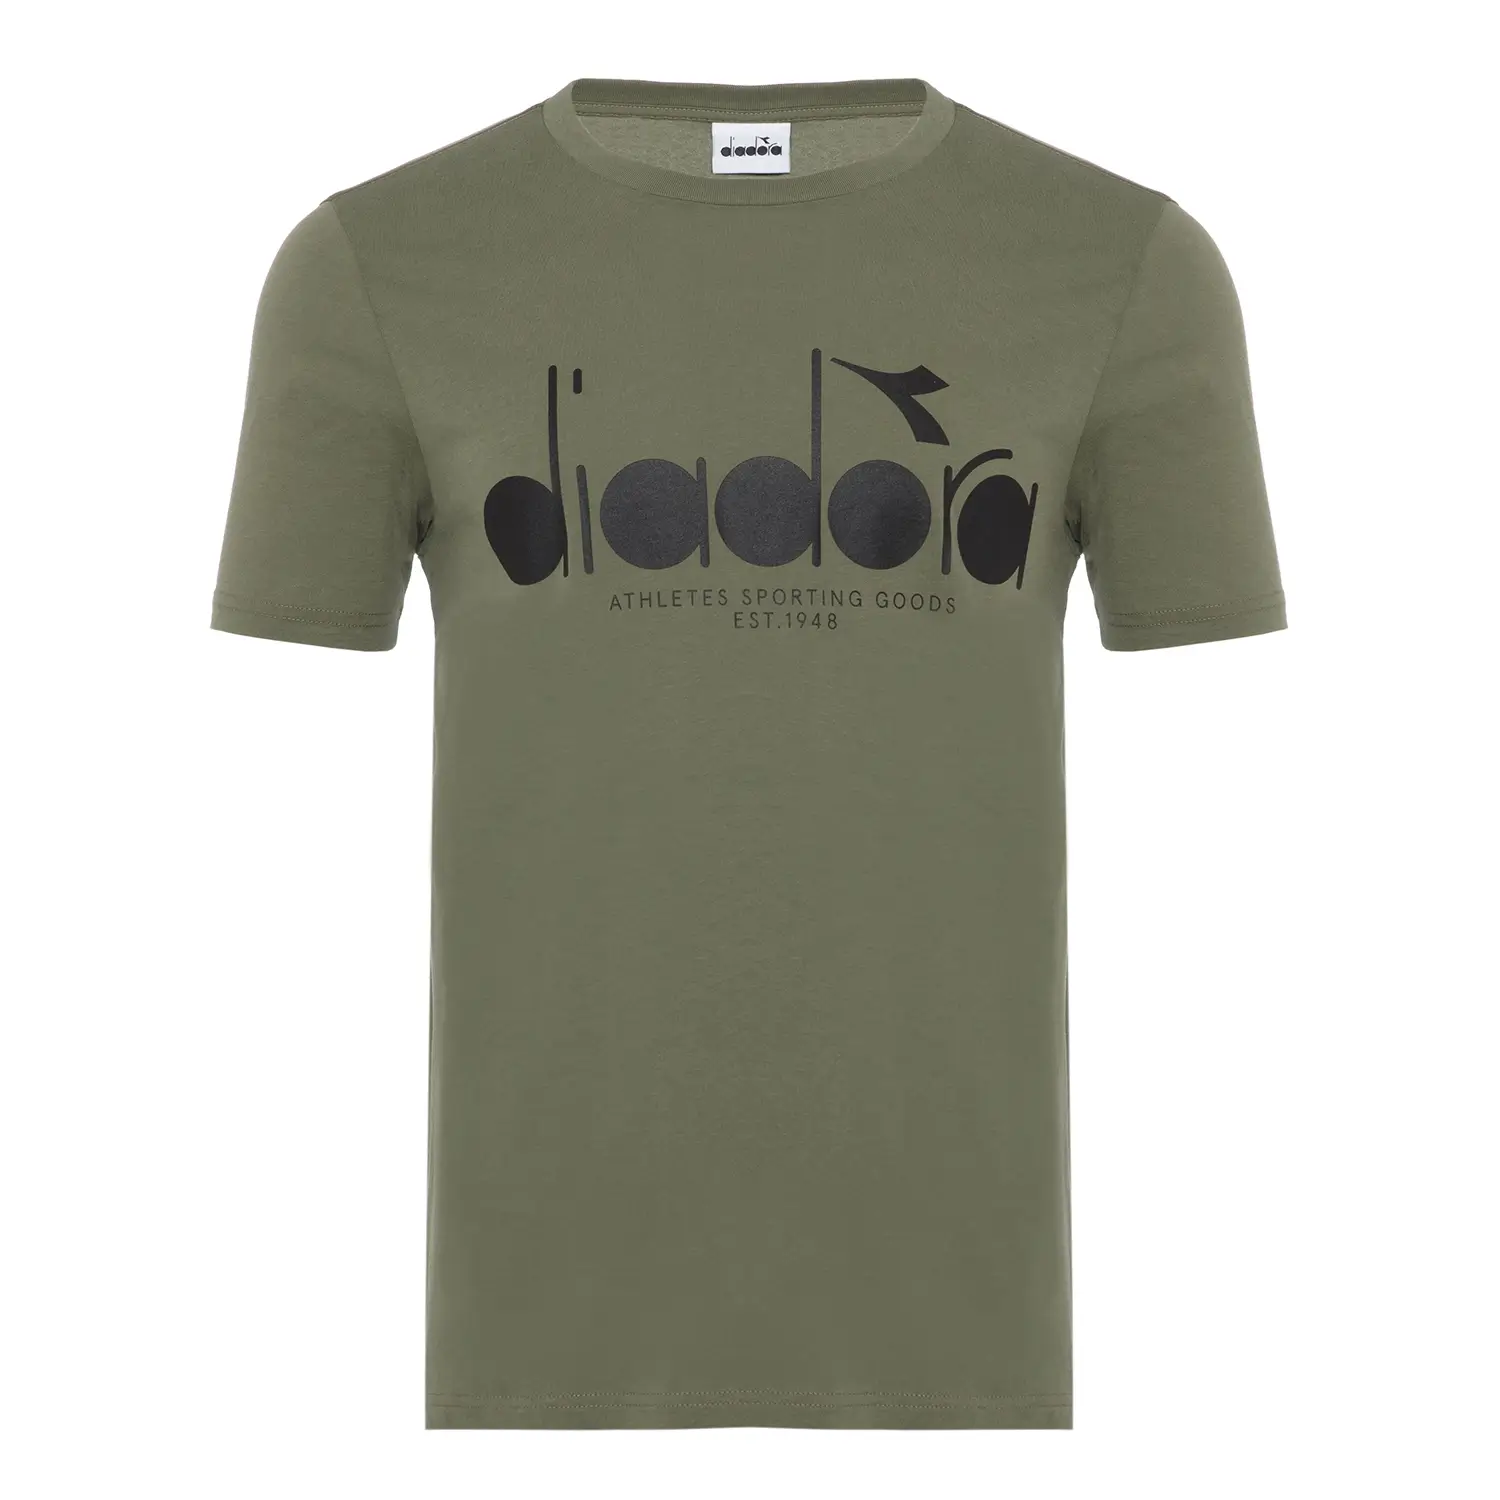 Diadora Ss T-shirt Iconic Asker Yeşili Erkek Tişört - 502.176633-70225